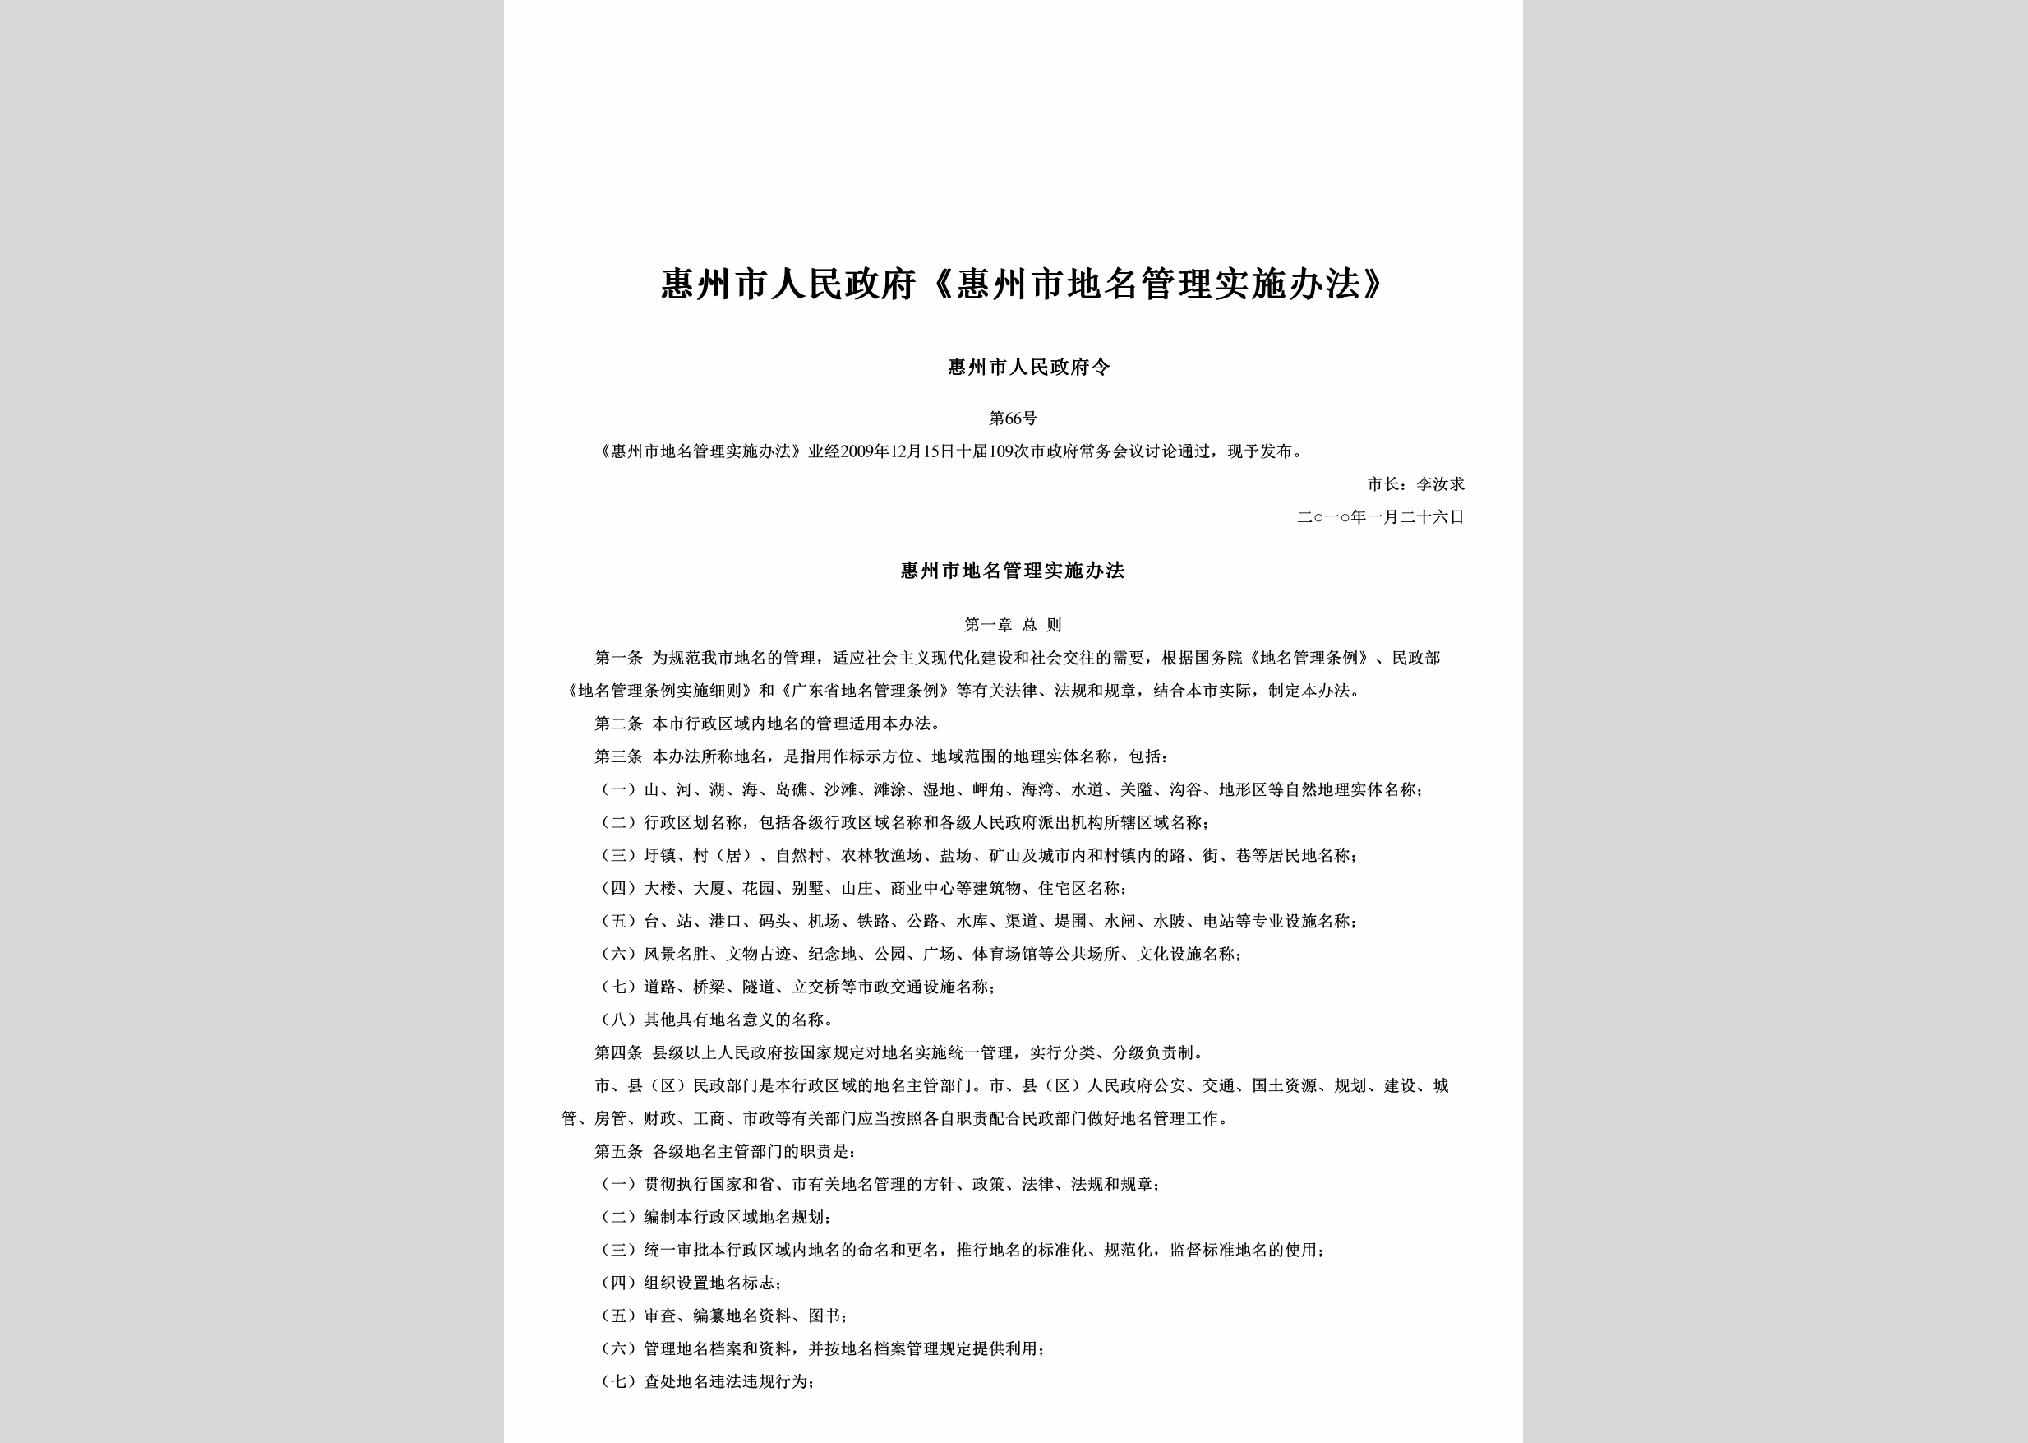 惠州市人民政府令第66号：《惠州市地名管理实施办法》